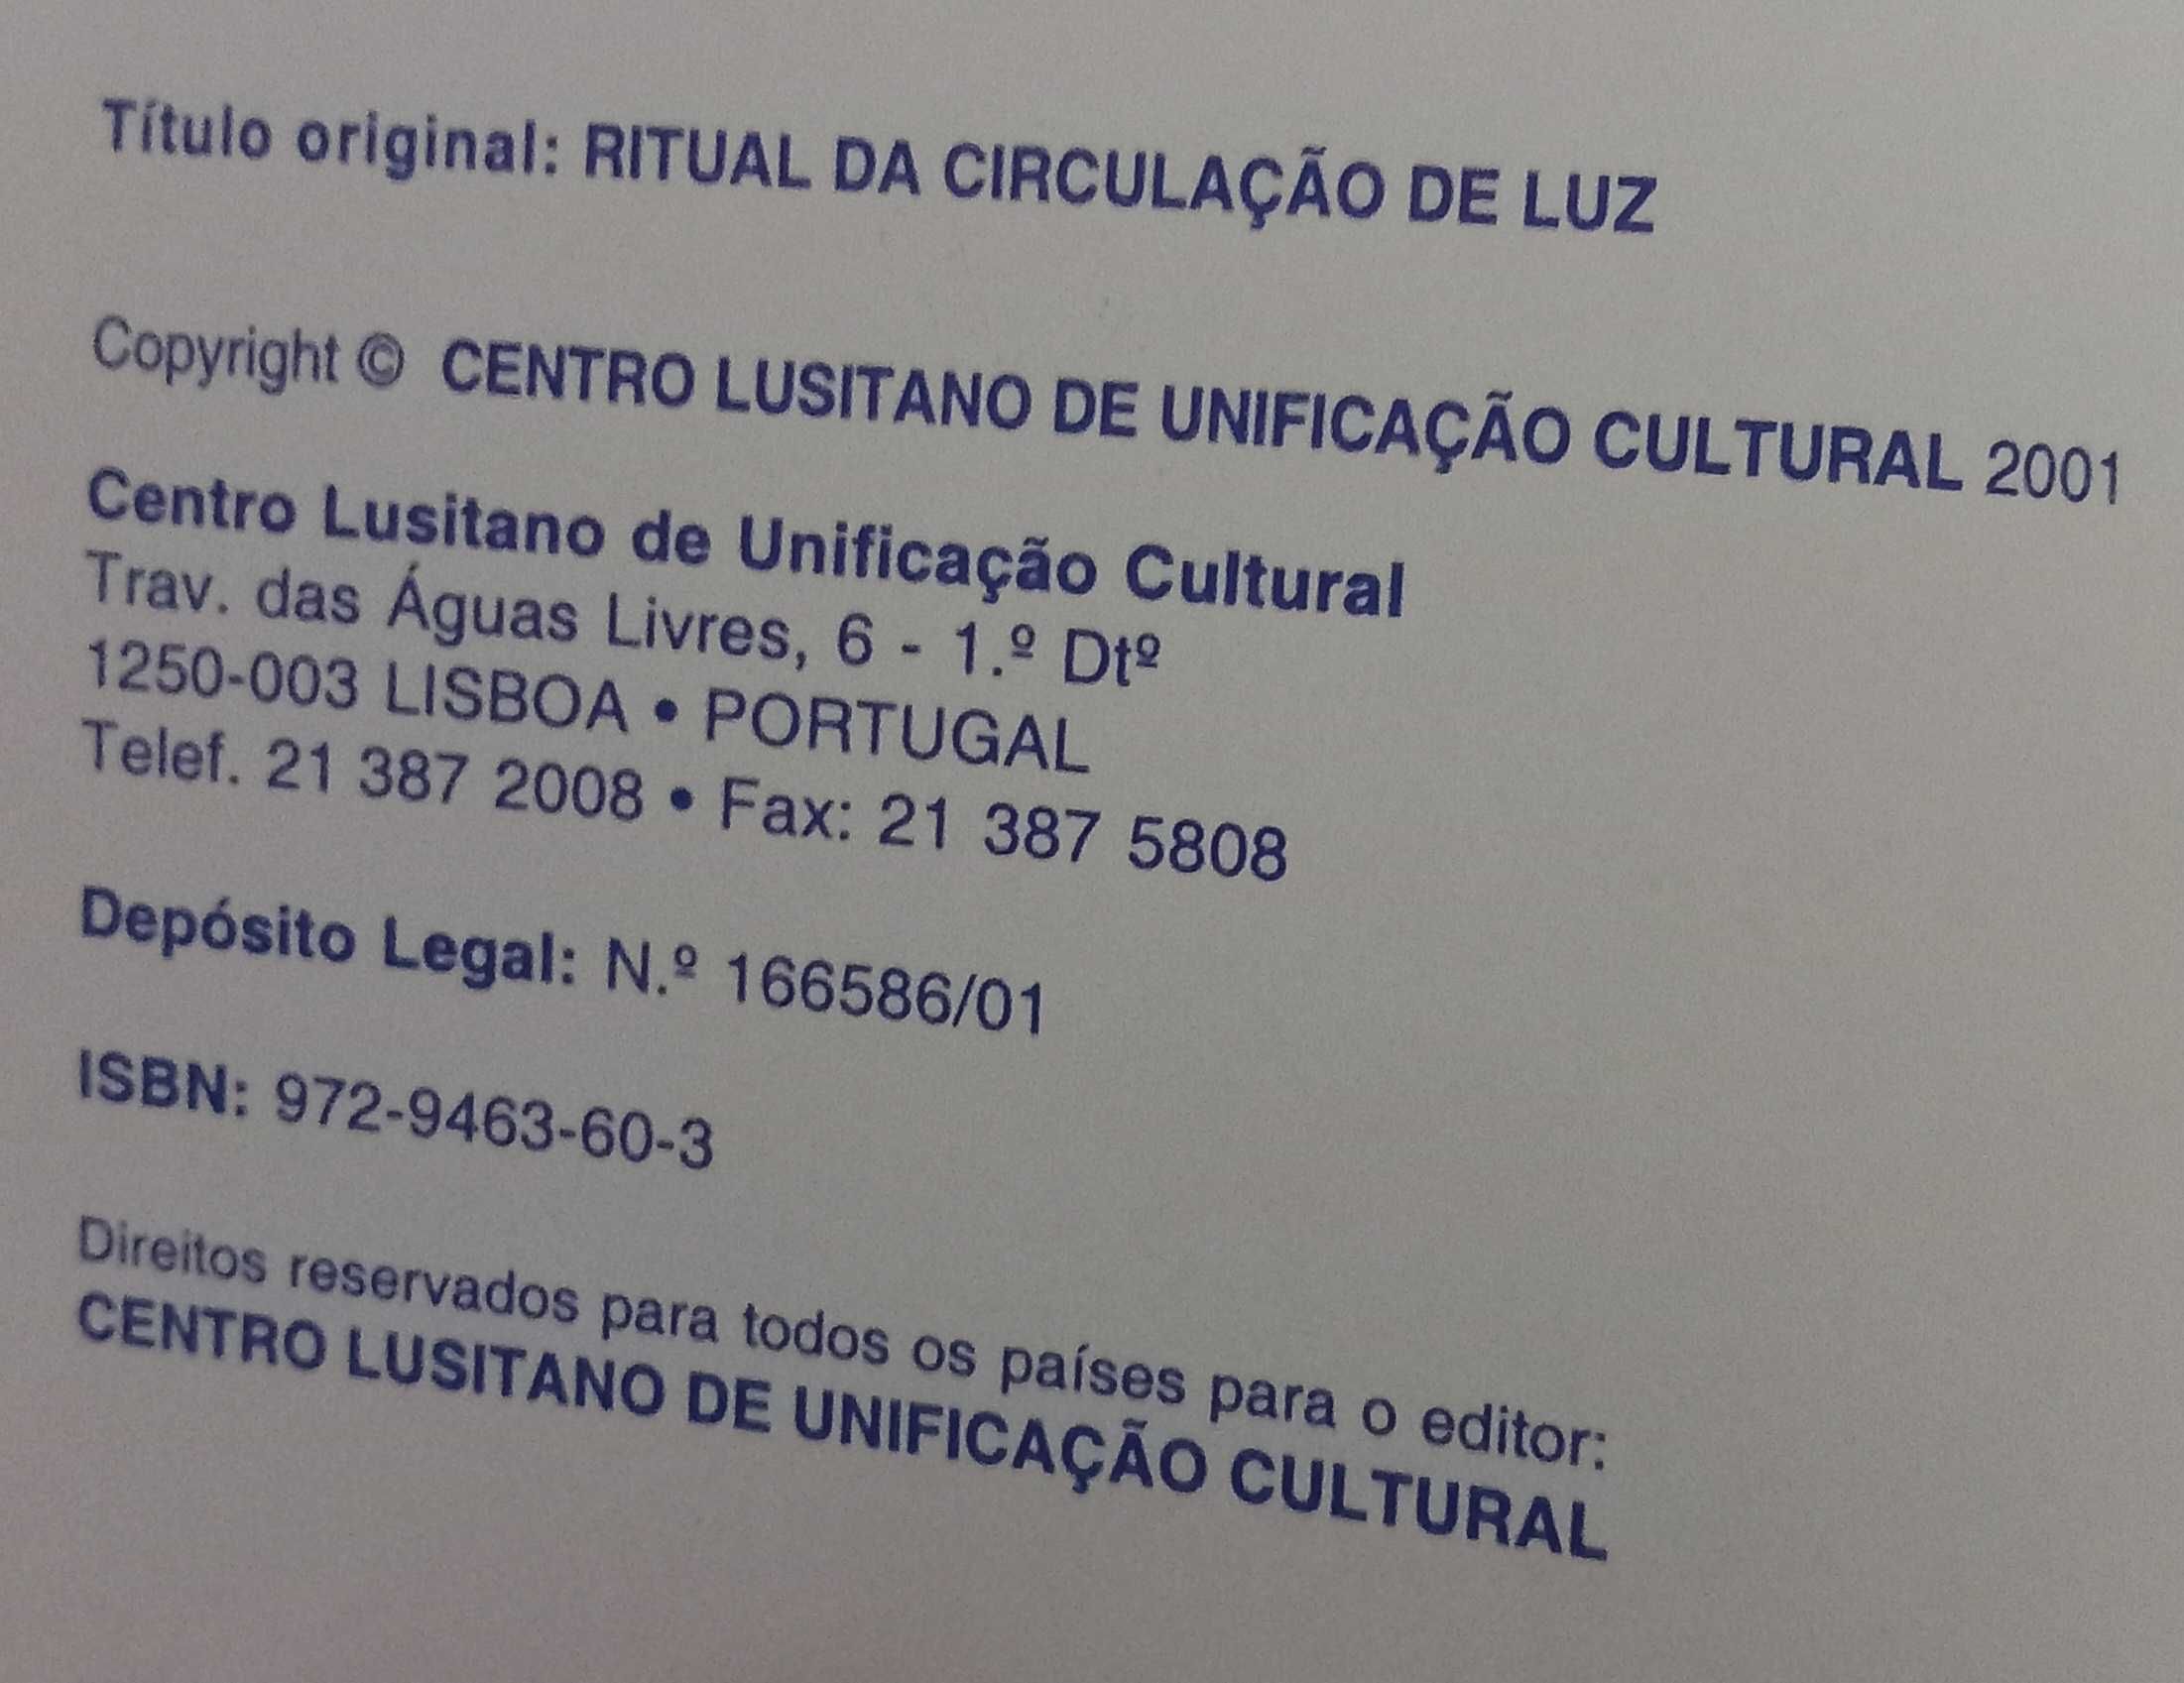 Ritual da Circulação de Luz do Centro Lusitano de Unificação Cultural